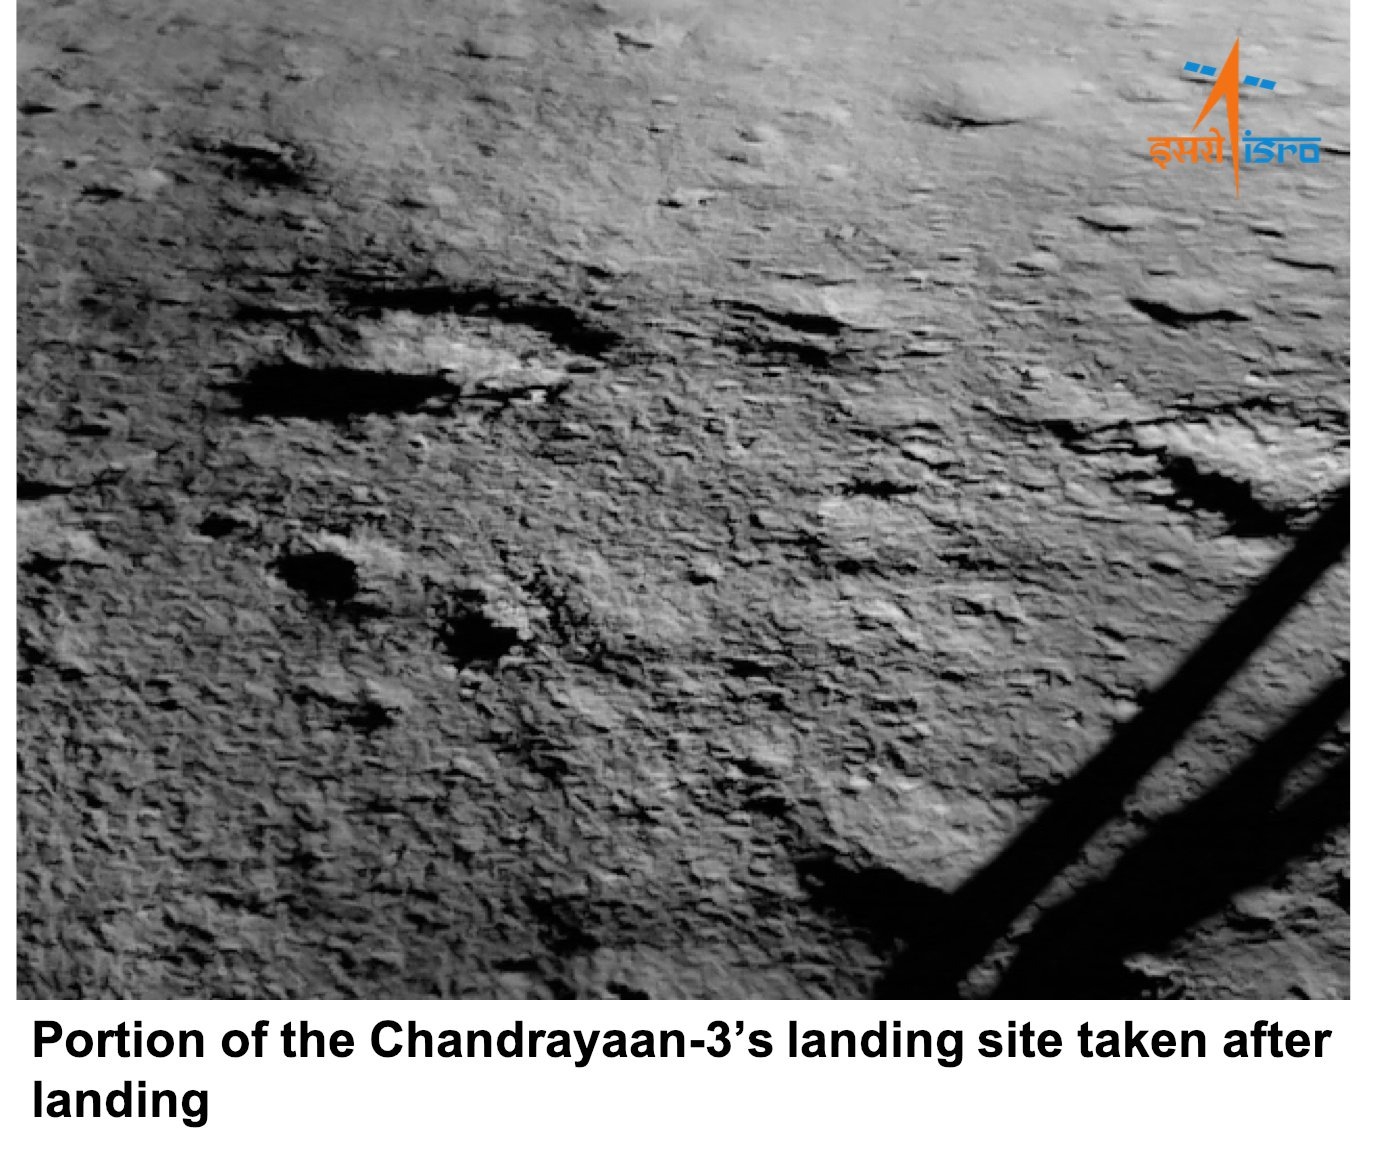 月船3號登陸後拍攝的月球表面。來源：ISRO